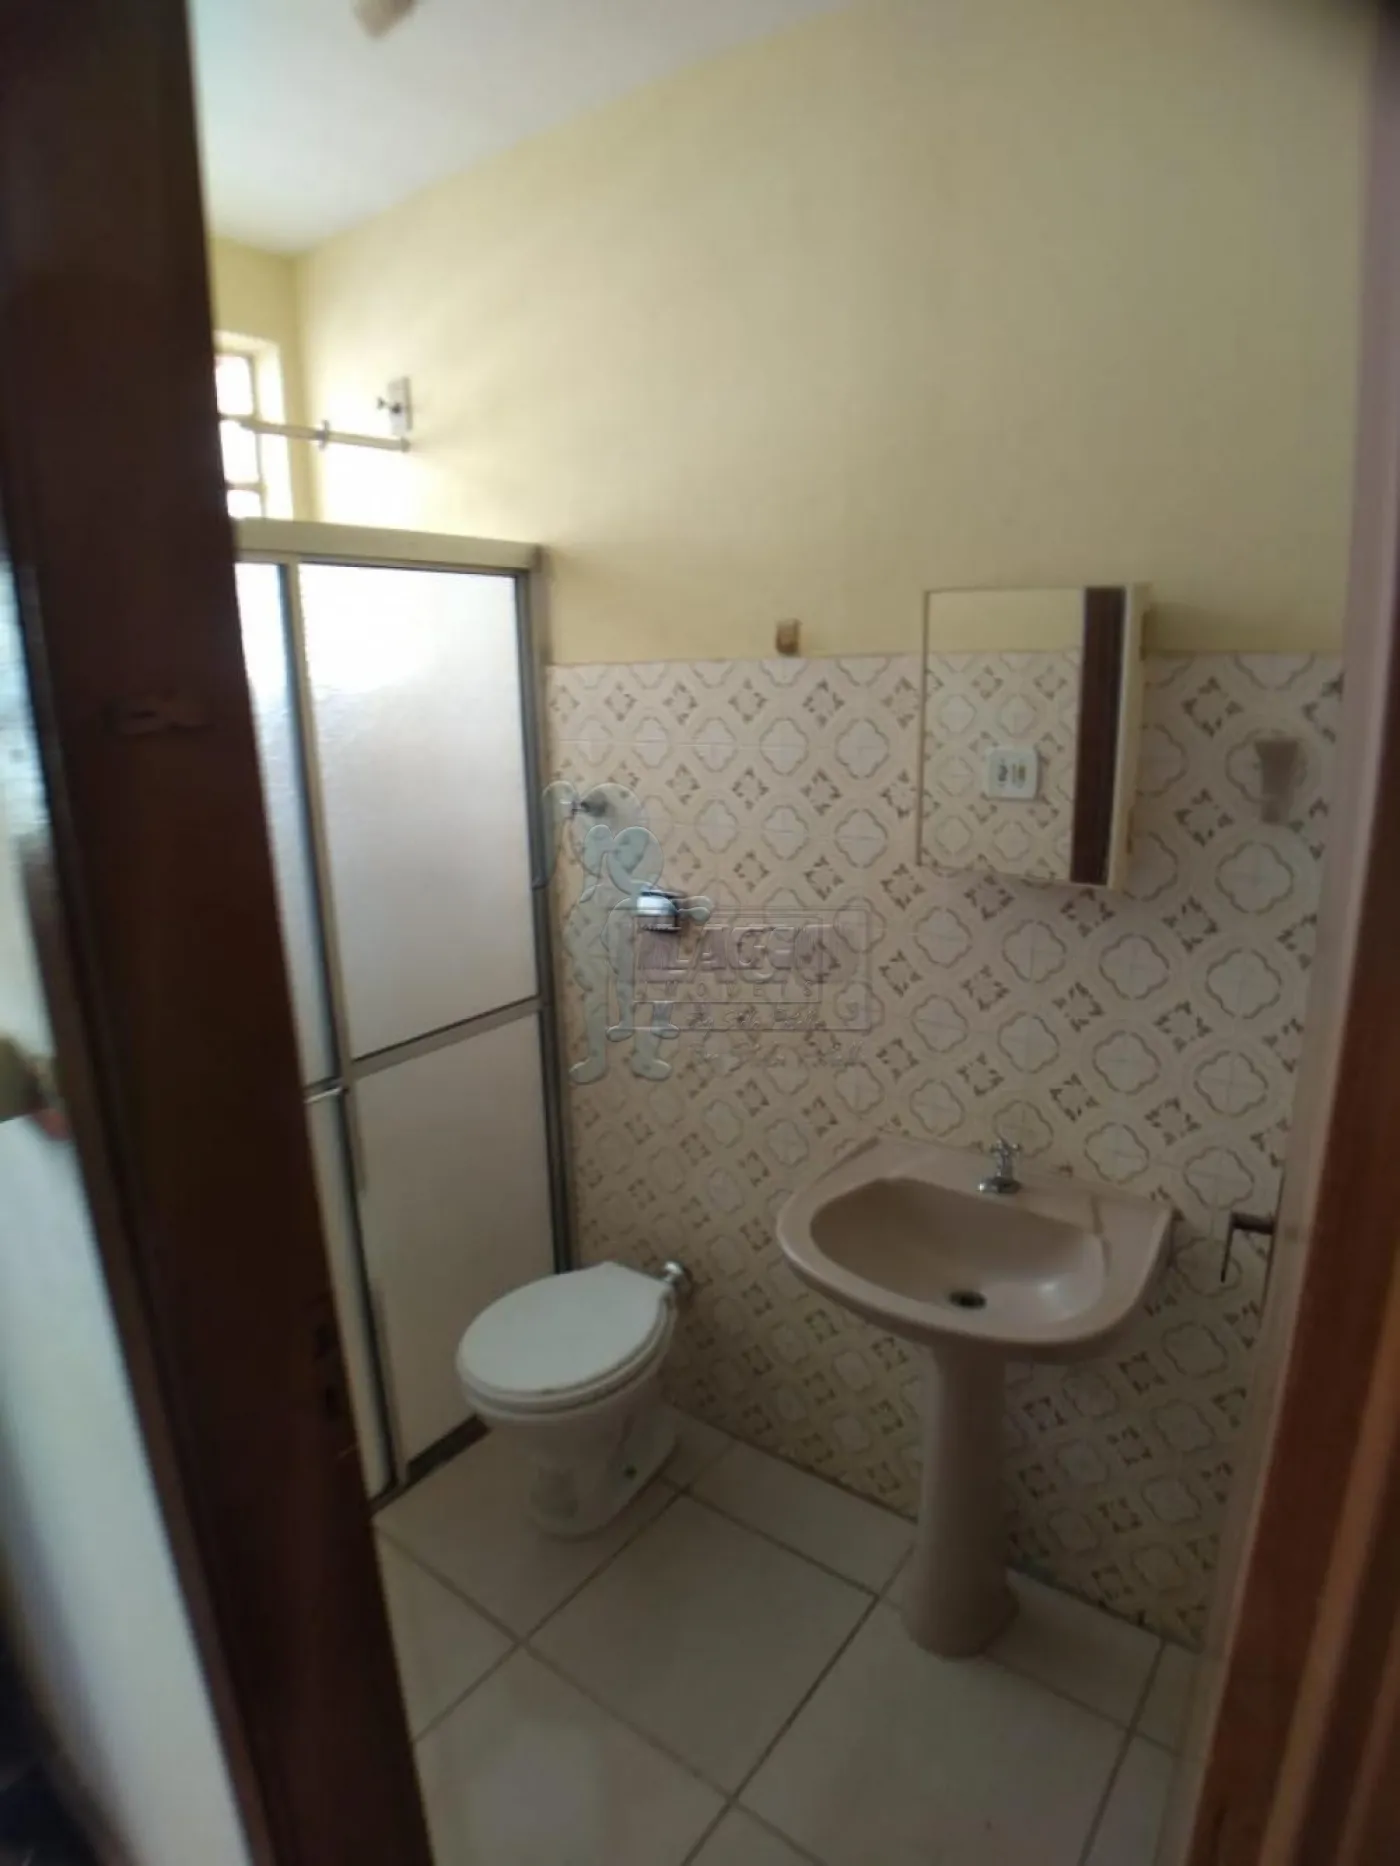 Alugar Apartamentos / Studio/Kitnet em Ribeirão Preto R$ 600,00 - Foto 5